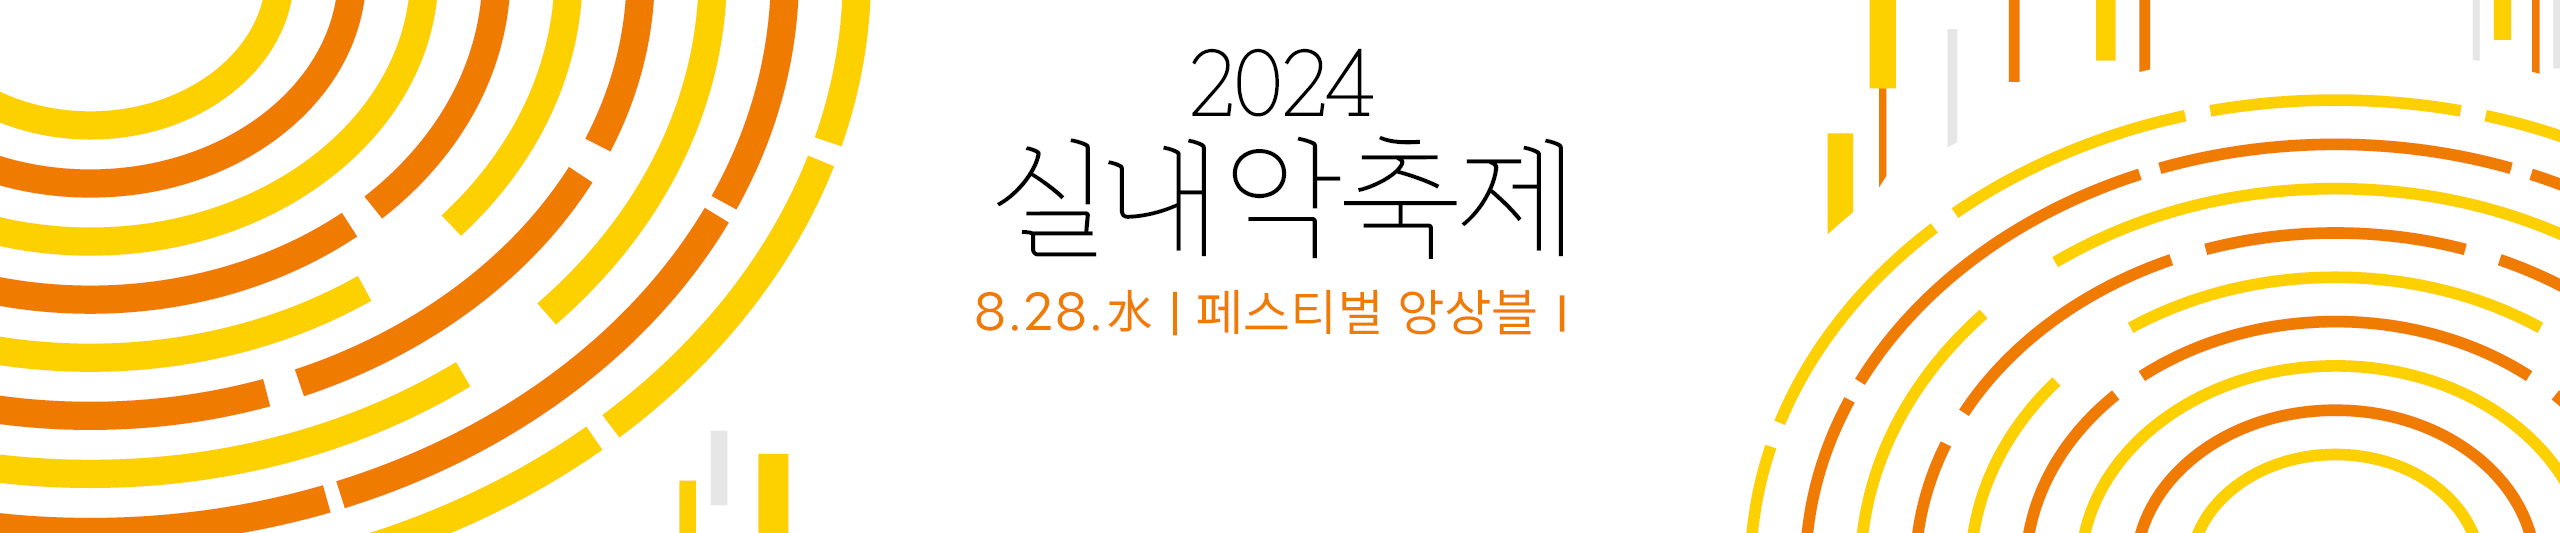 2024 실내악축제-페스티벌 앙상블Ⅰ